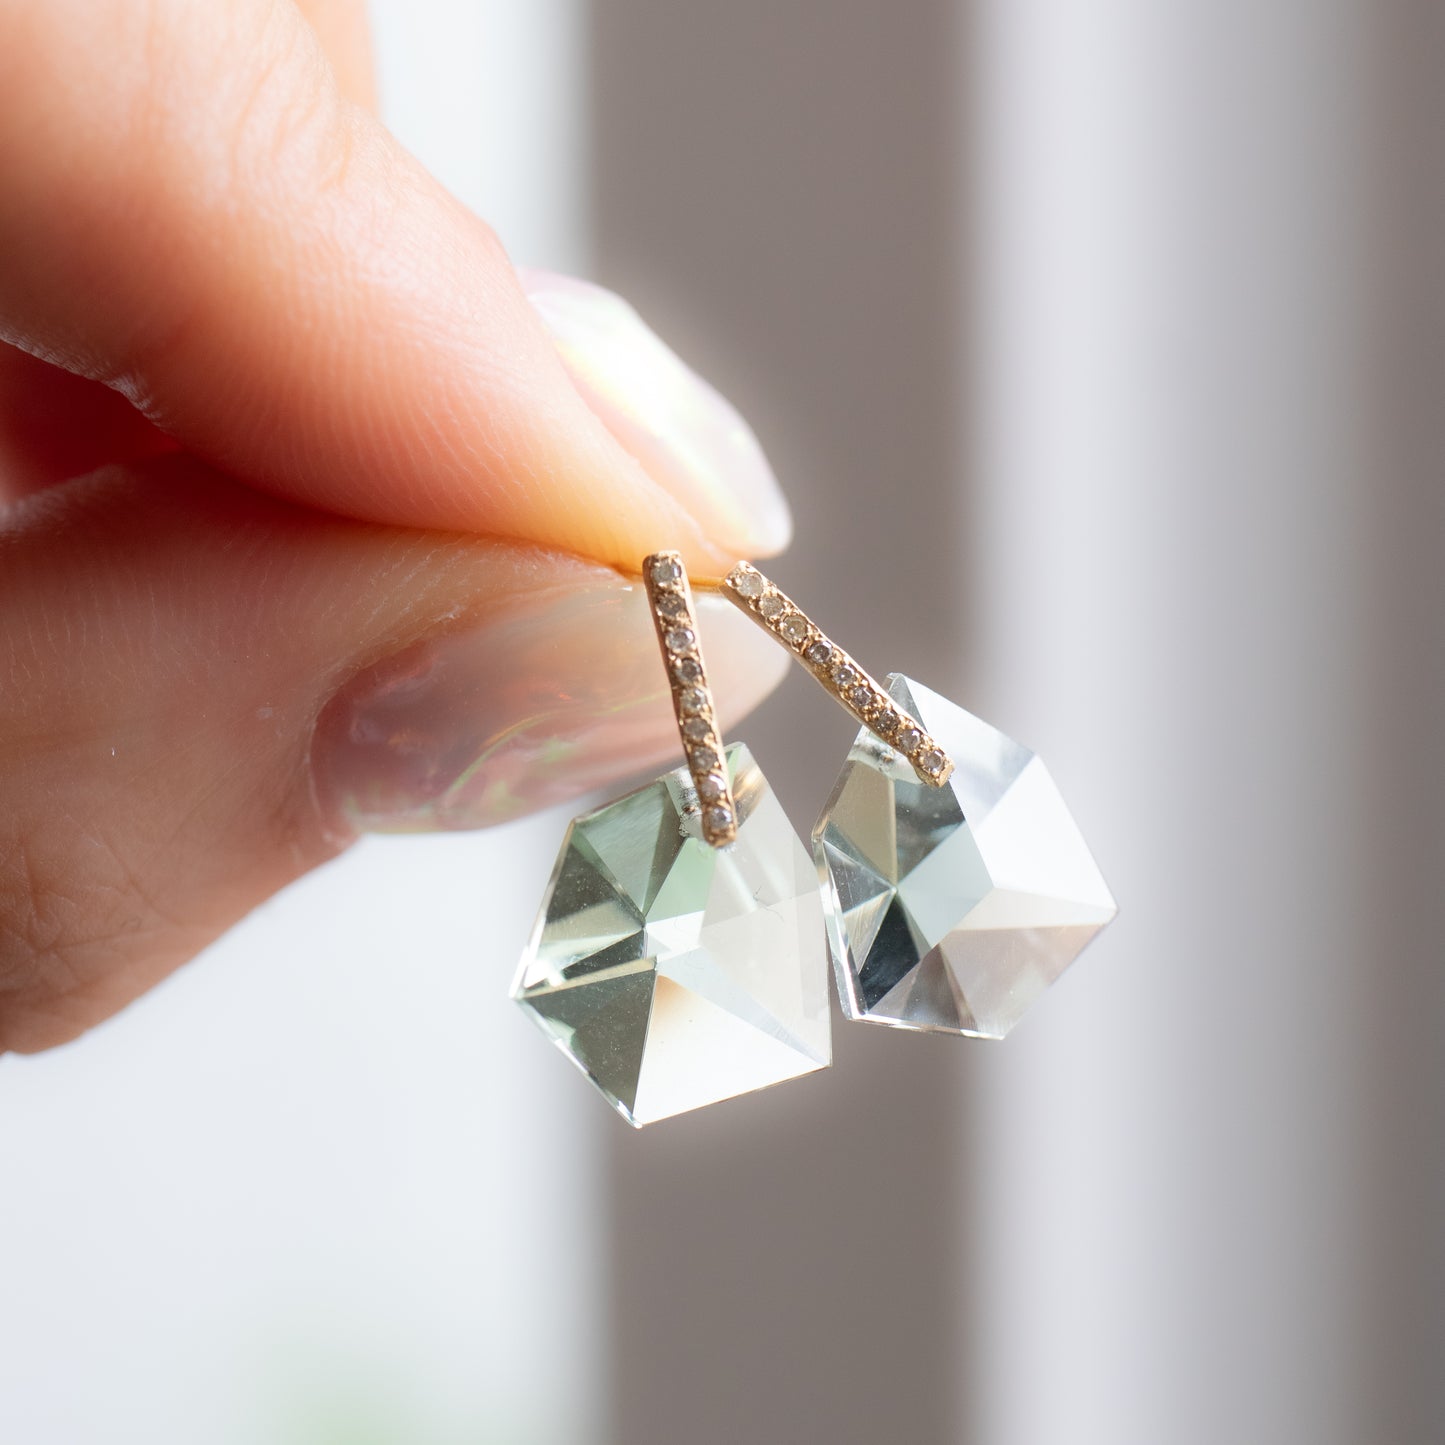 Hibiki Stone Pierced Earrings - Green Amethyst / Diamond -